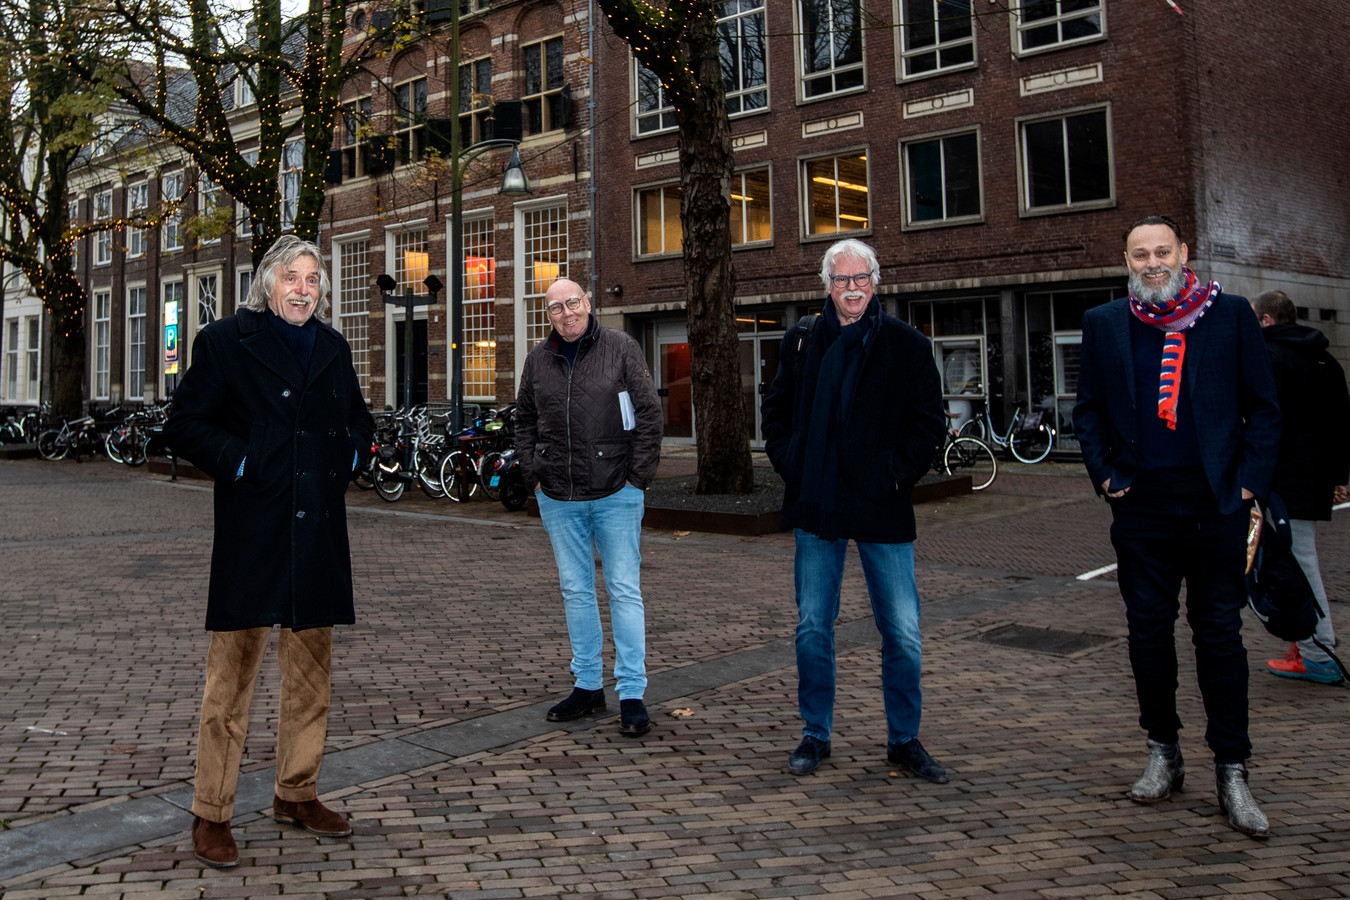 Johan Derksen, Kees Jansma, Matty Verkamman en Hugo Borst namen eind 2020 een kijkje in de voormalige bibliotheek van Deventer. De voetbalcoryfeeën zagen het pand lang als een serieuze optie voor het Nationale Voetbalmuseum.